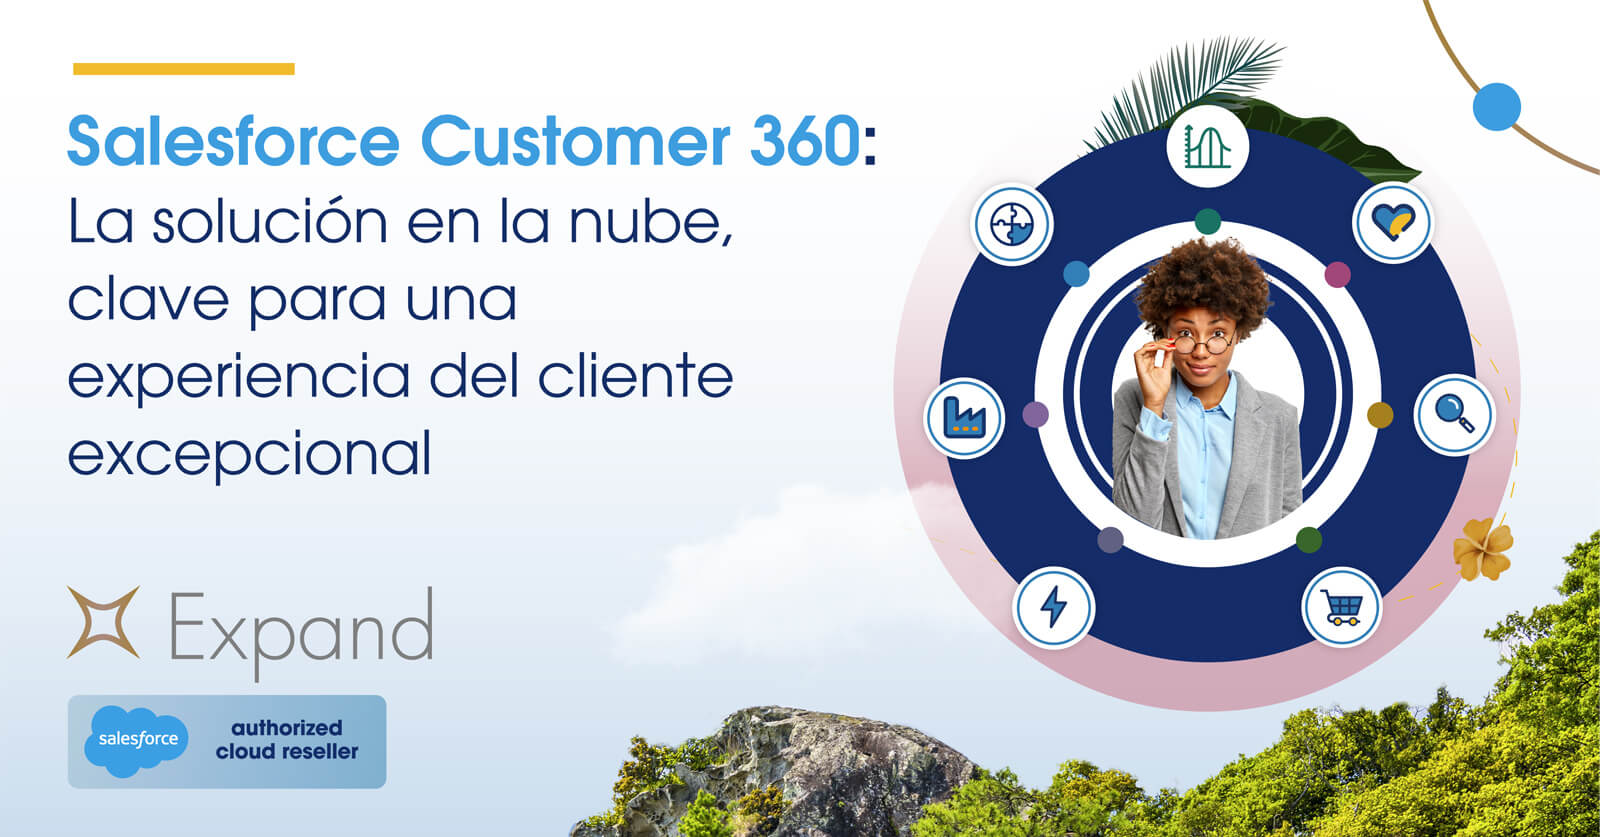 Salesforce Customer 360: La solución en la nube, clave para una experiencia del cliente excepcional